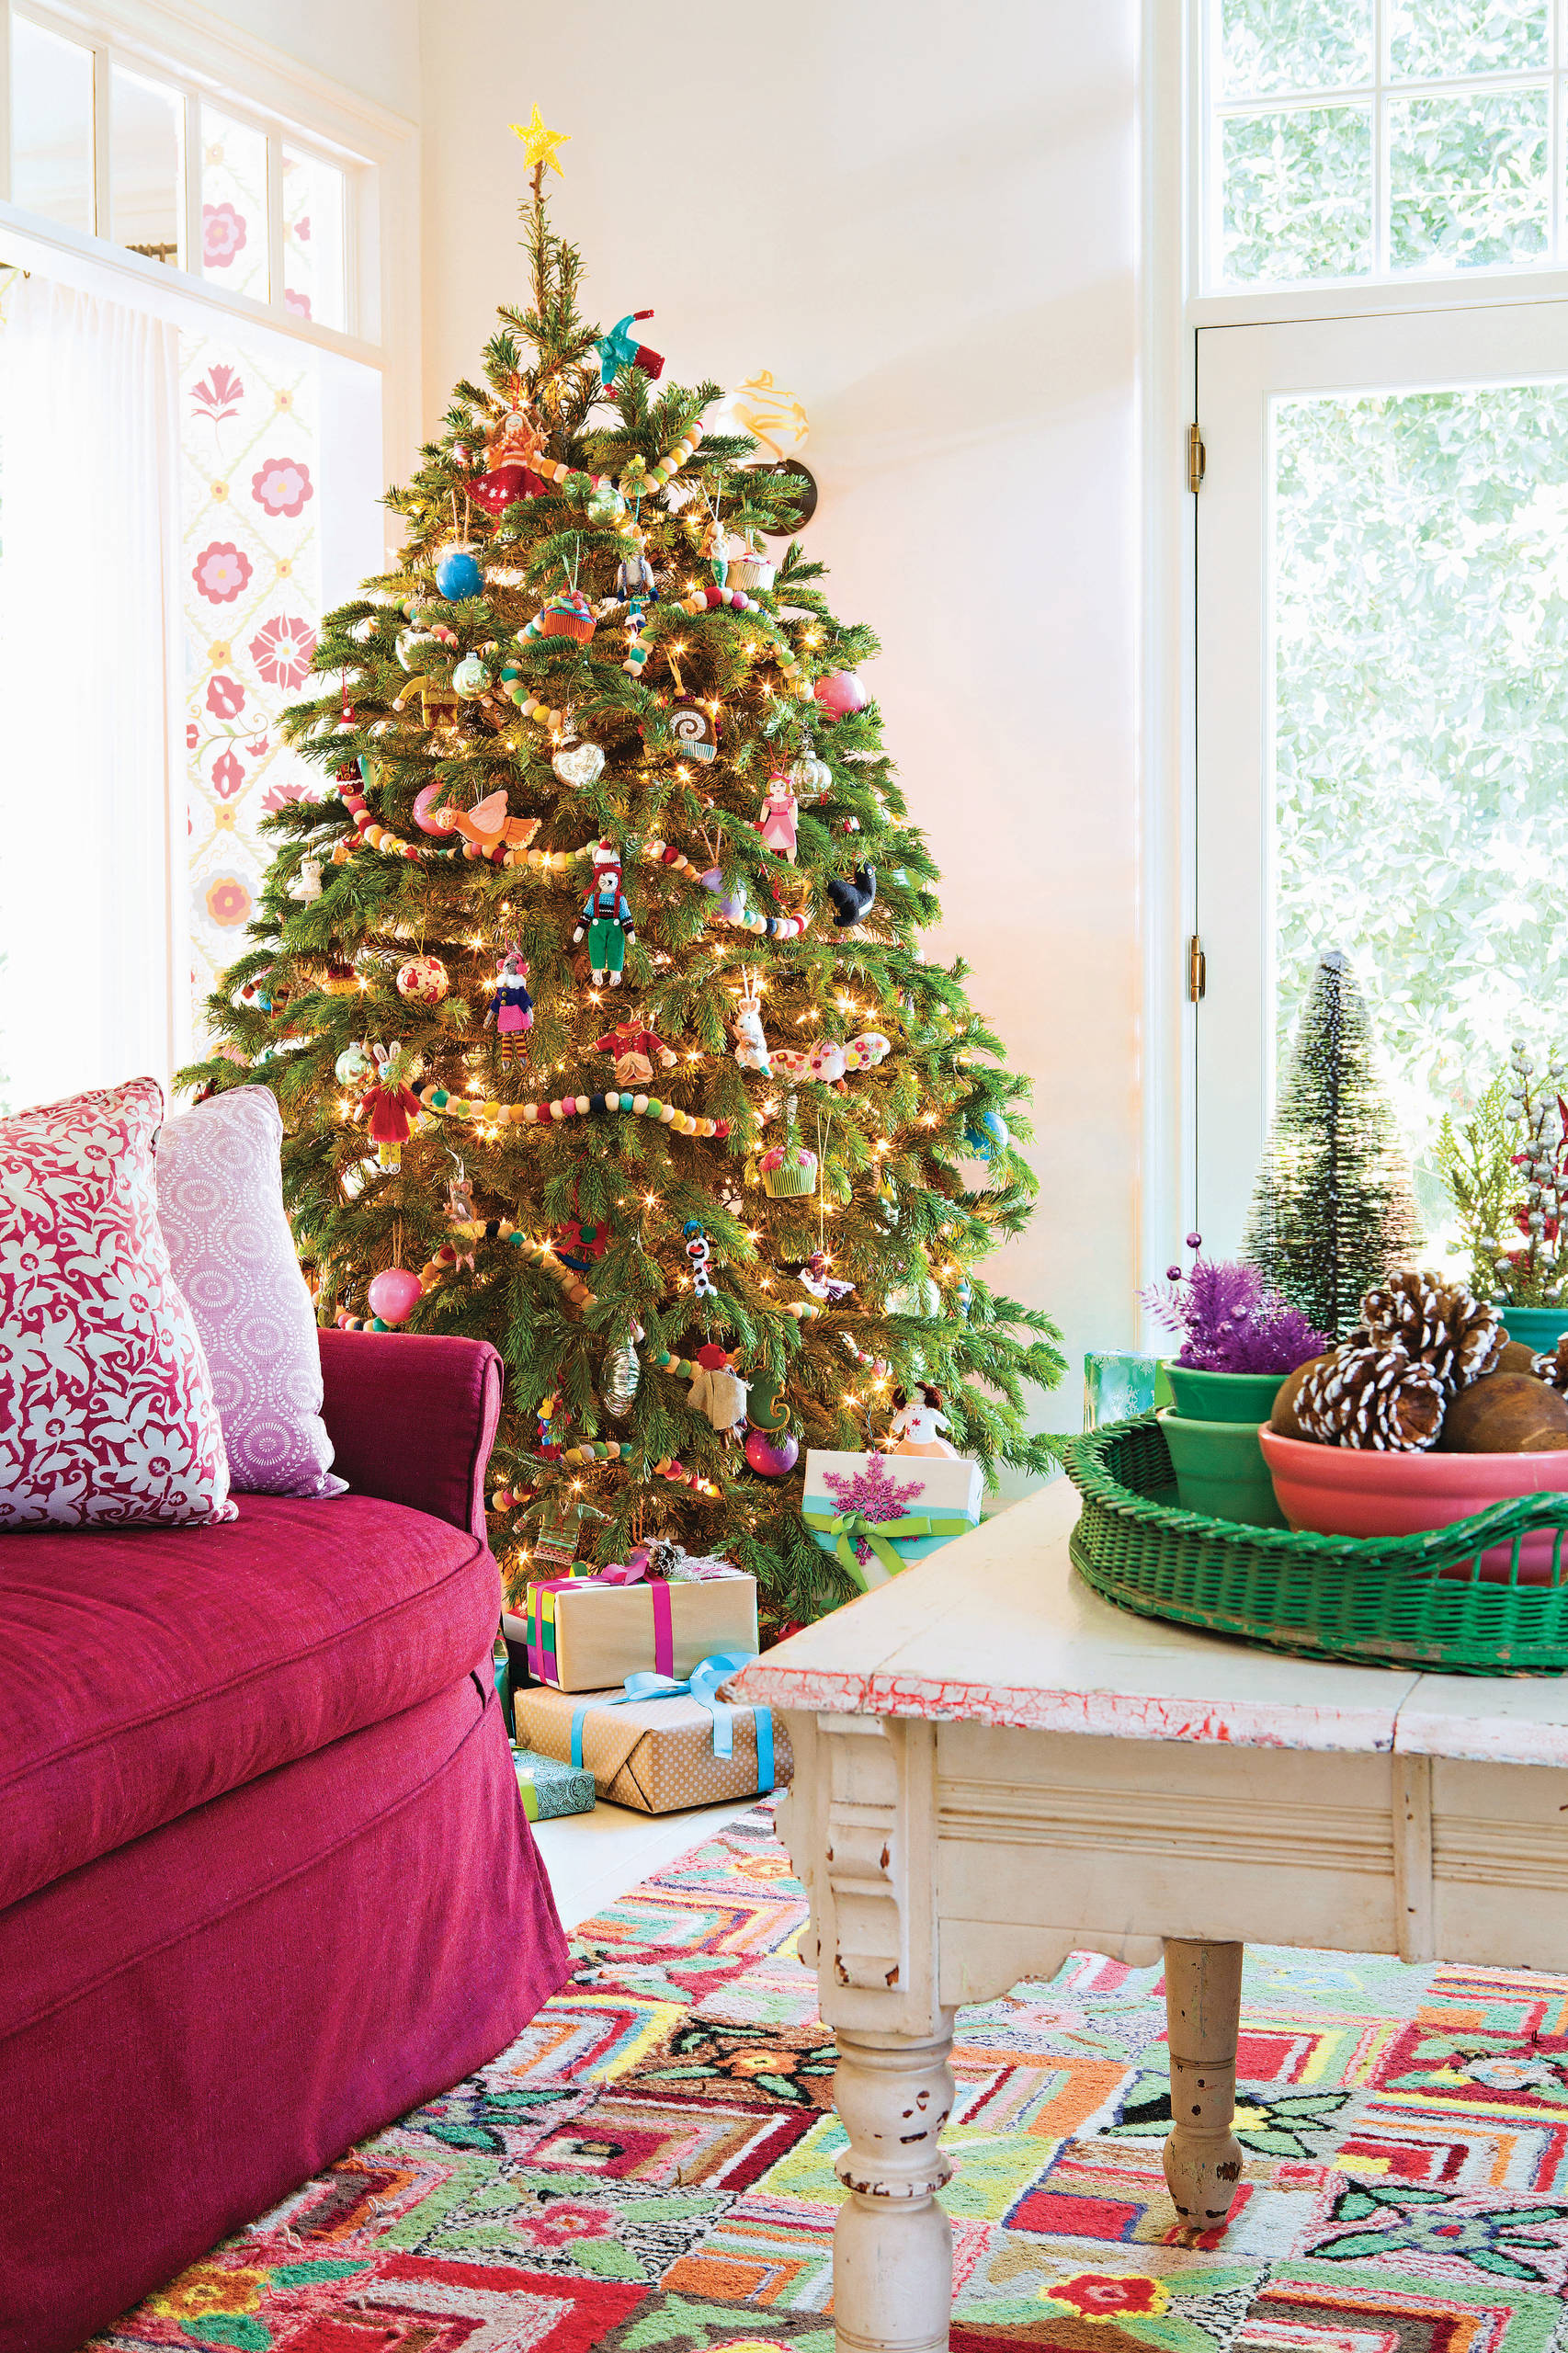 Darf man eigentlich noch einen echten Weihnachtsbaum aufstellen?